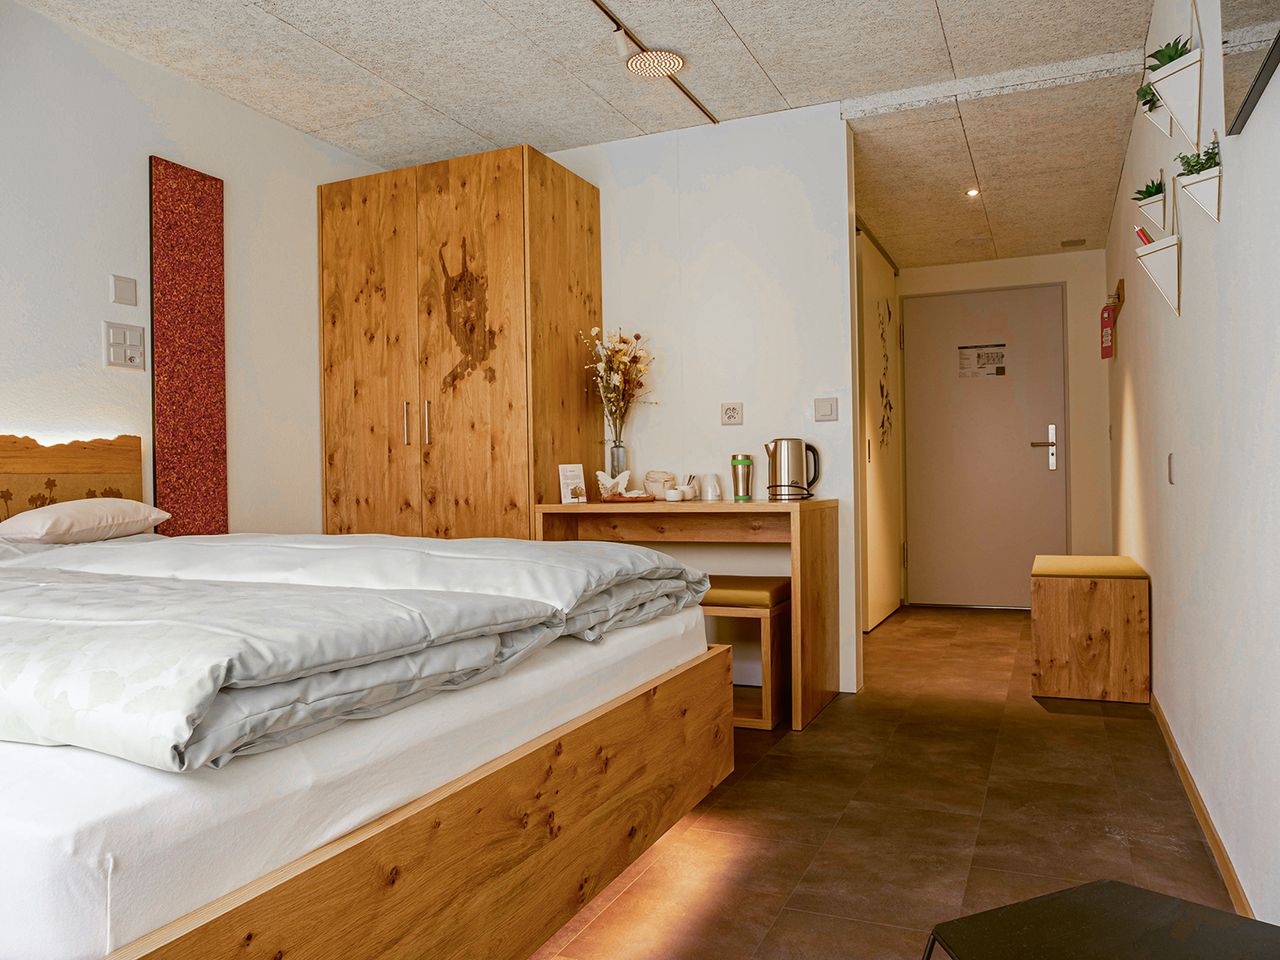 Das Zimmer «Future Hotelier Room» von Stefan Friedli, Timothey Trachsel und Nathalie Mettraux ist äusserst wandelbar.